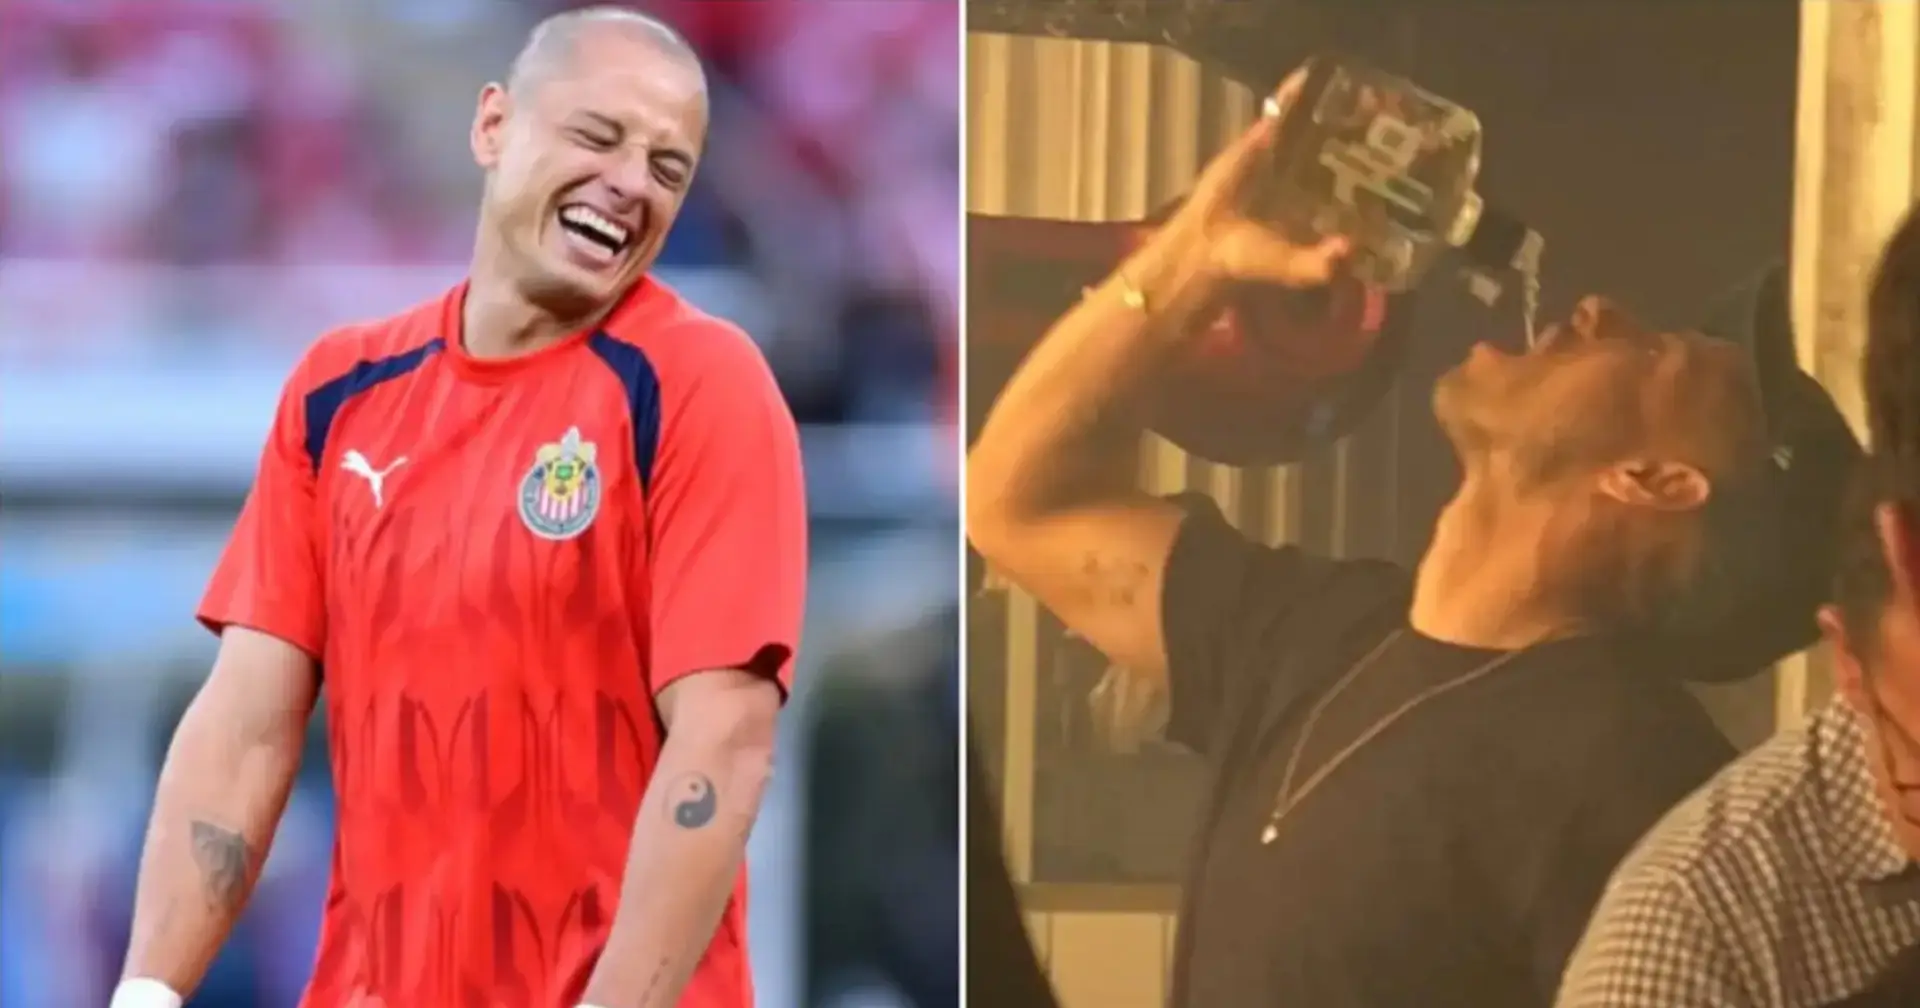 Ehemaliger United- und Real-Stürmer Chicharito zelebriert sein Debüttor in einem Nachtclub, indem er sich Tequila in die Kehle schüttet 